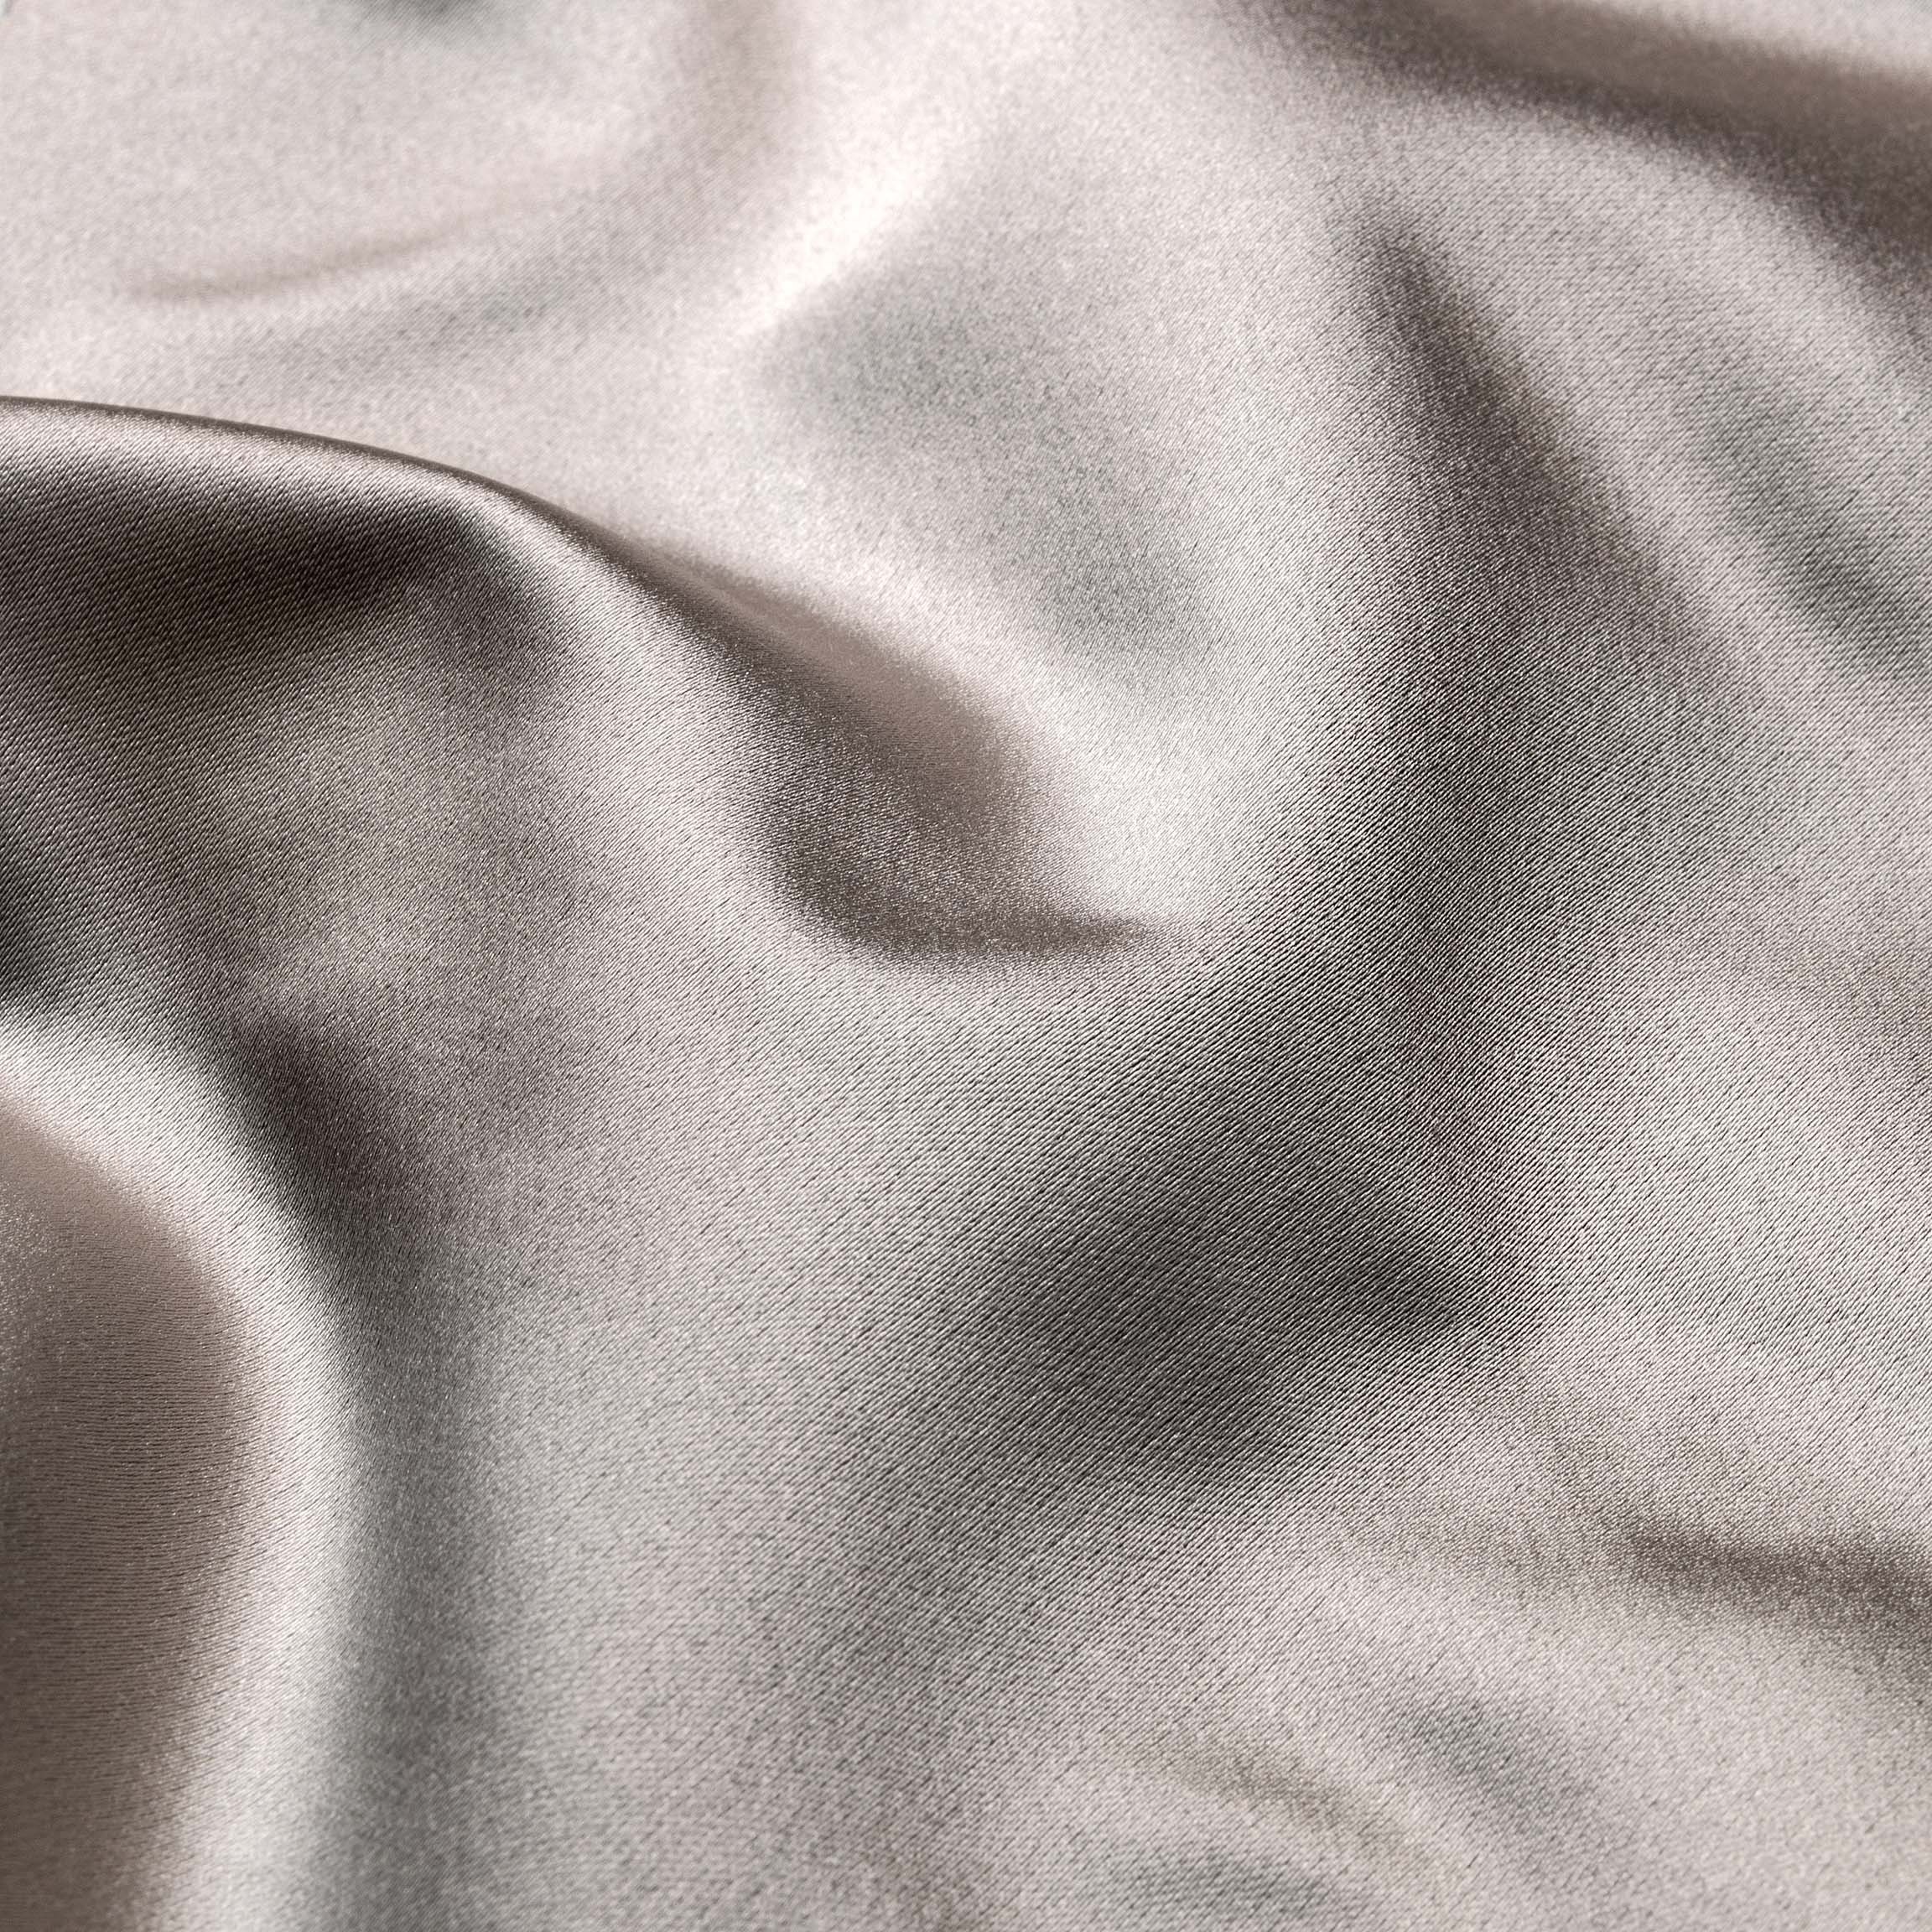  Портьерная ткань MONTREAL FUMA, ширина 280 см  - Фото